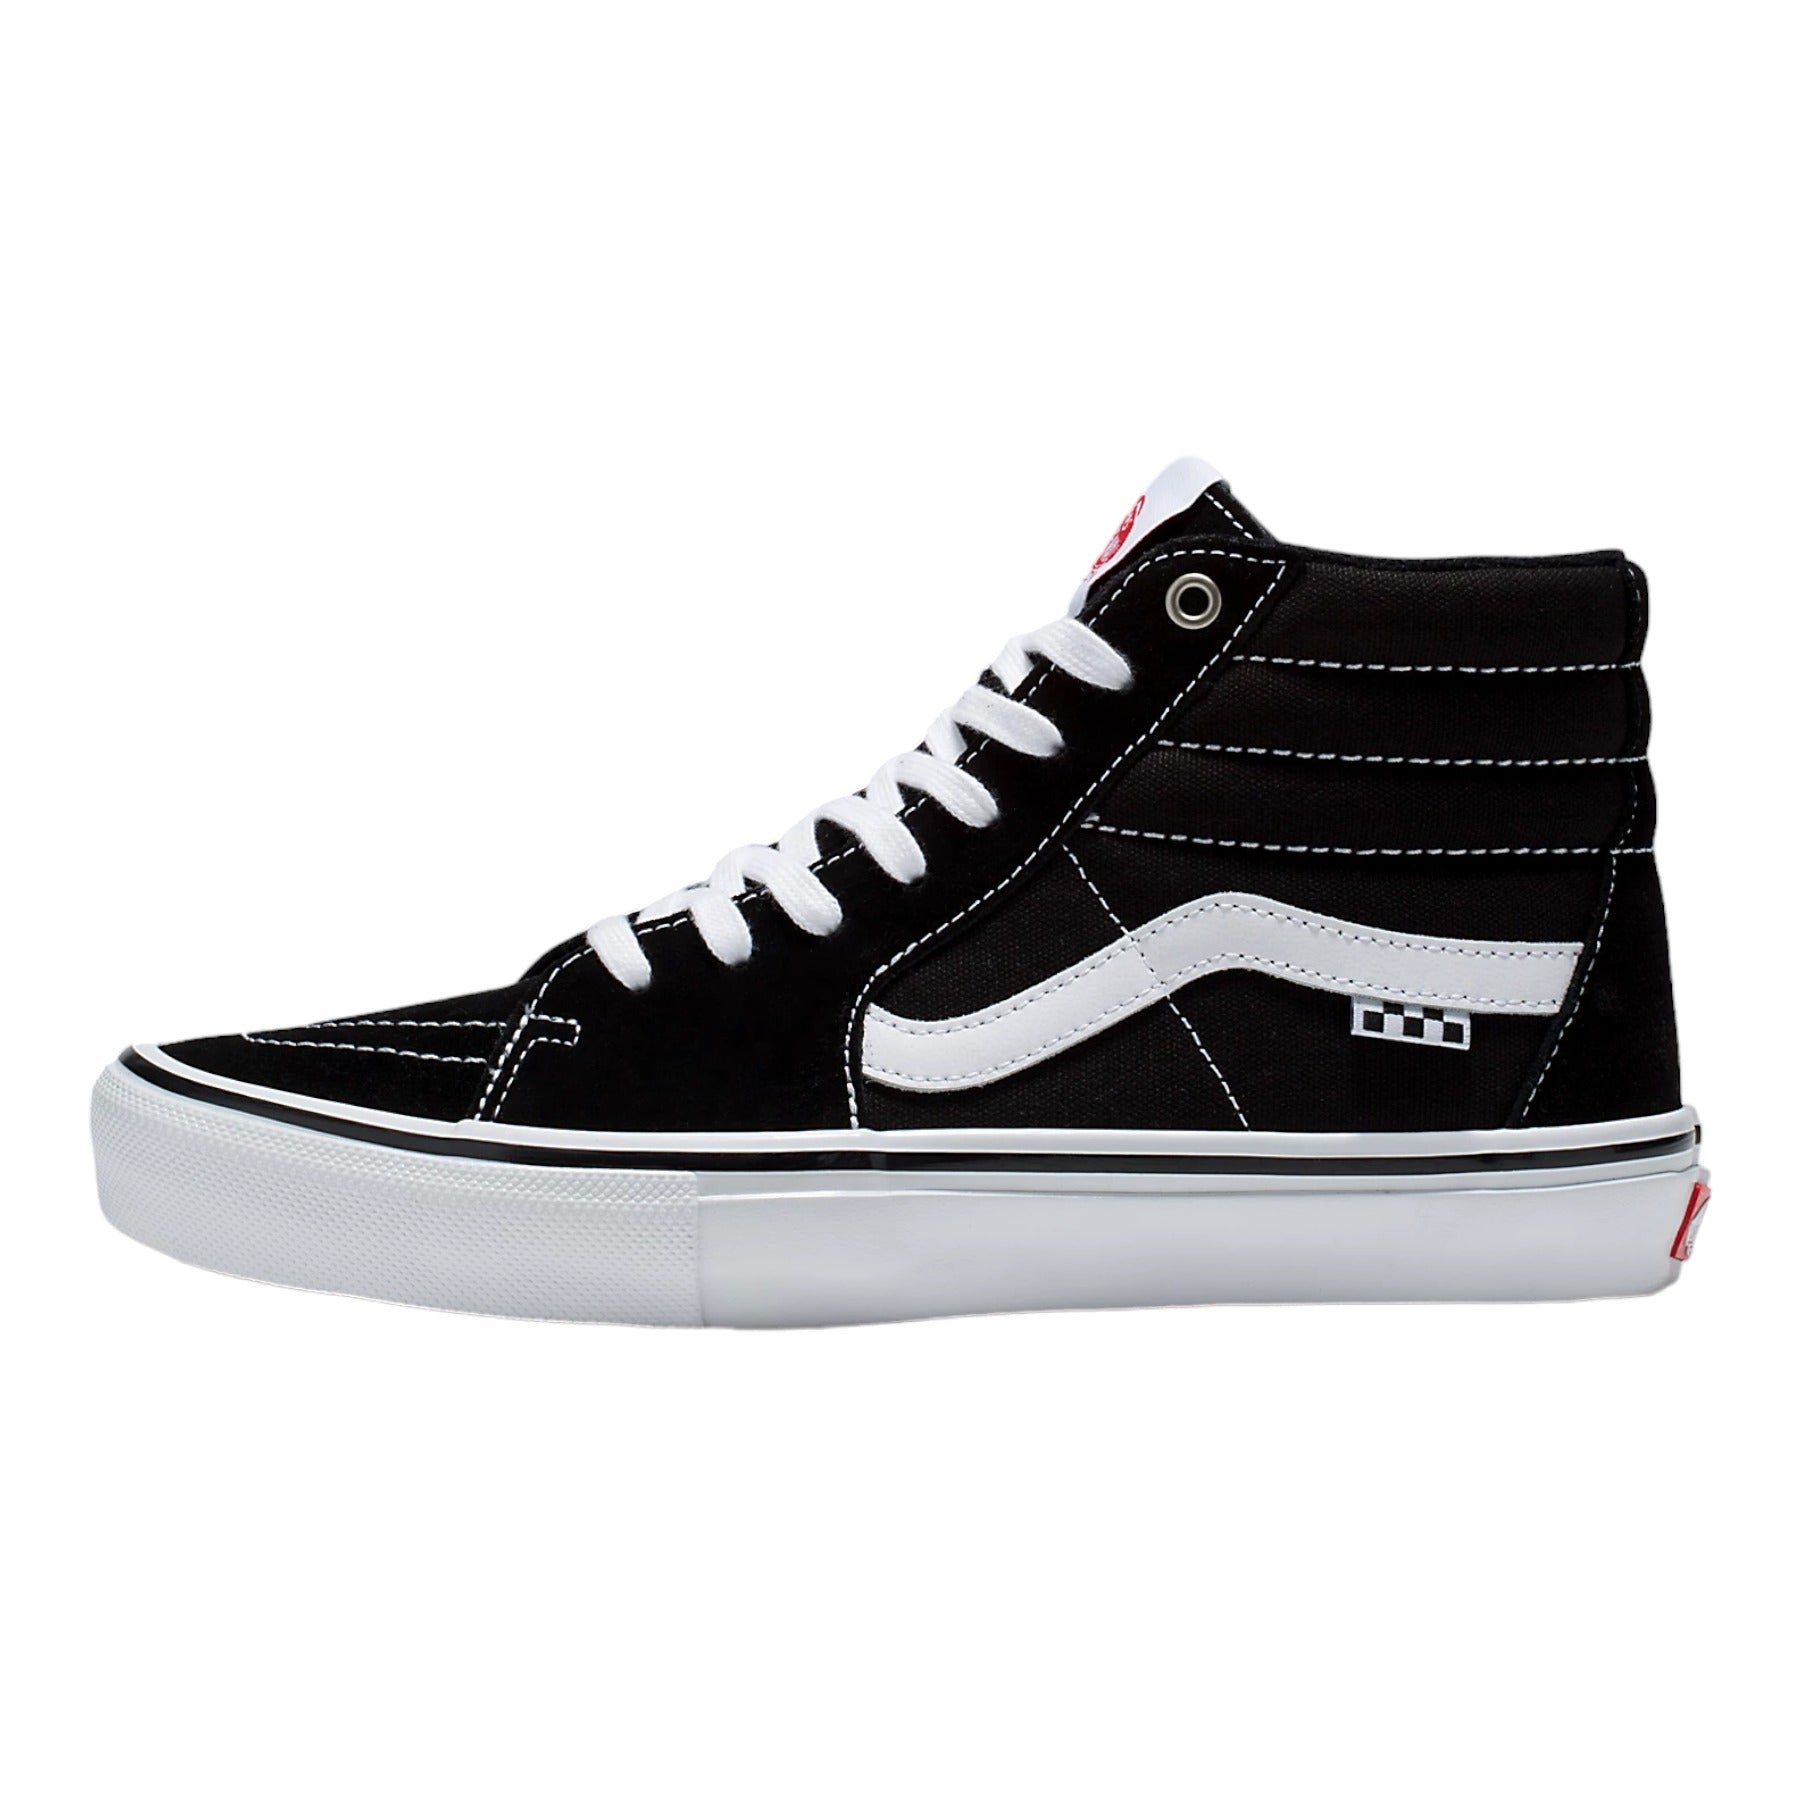 Vans Skate SK8-Hi Shoes - Black/White